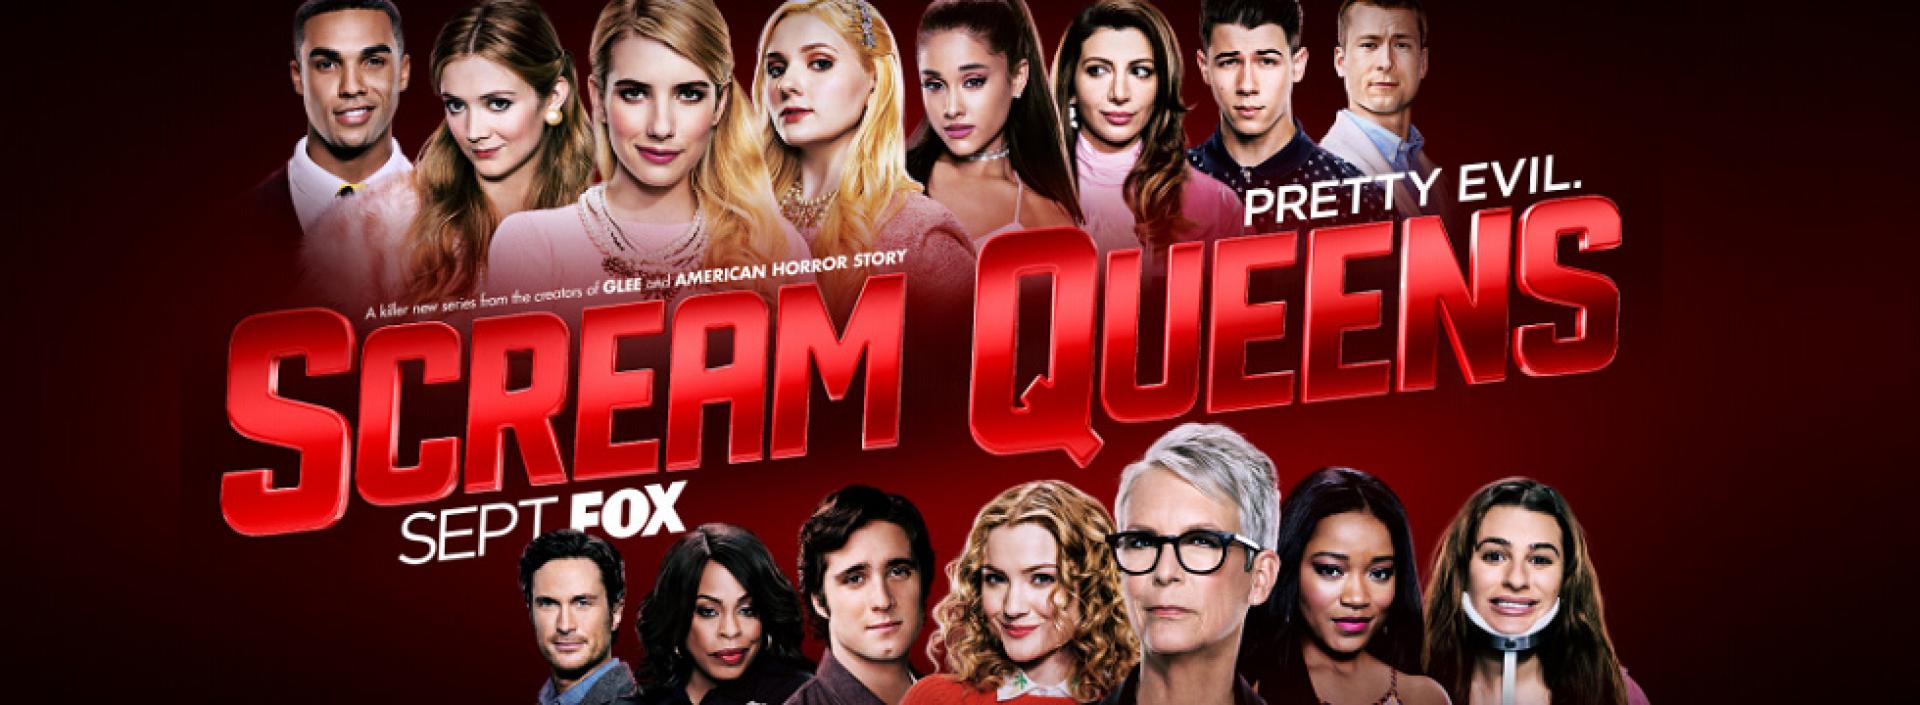 Scream Queens 1x08